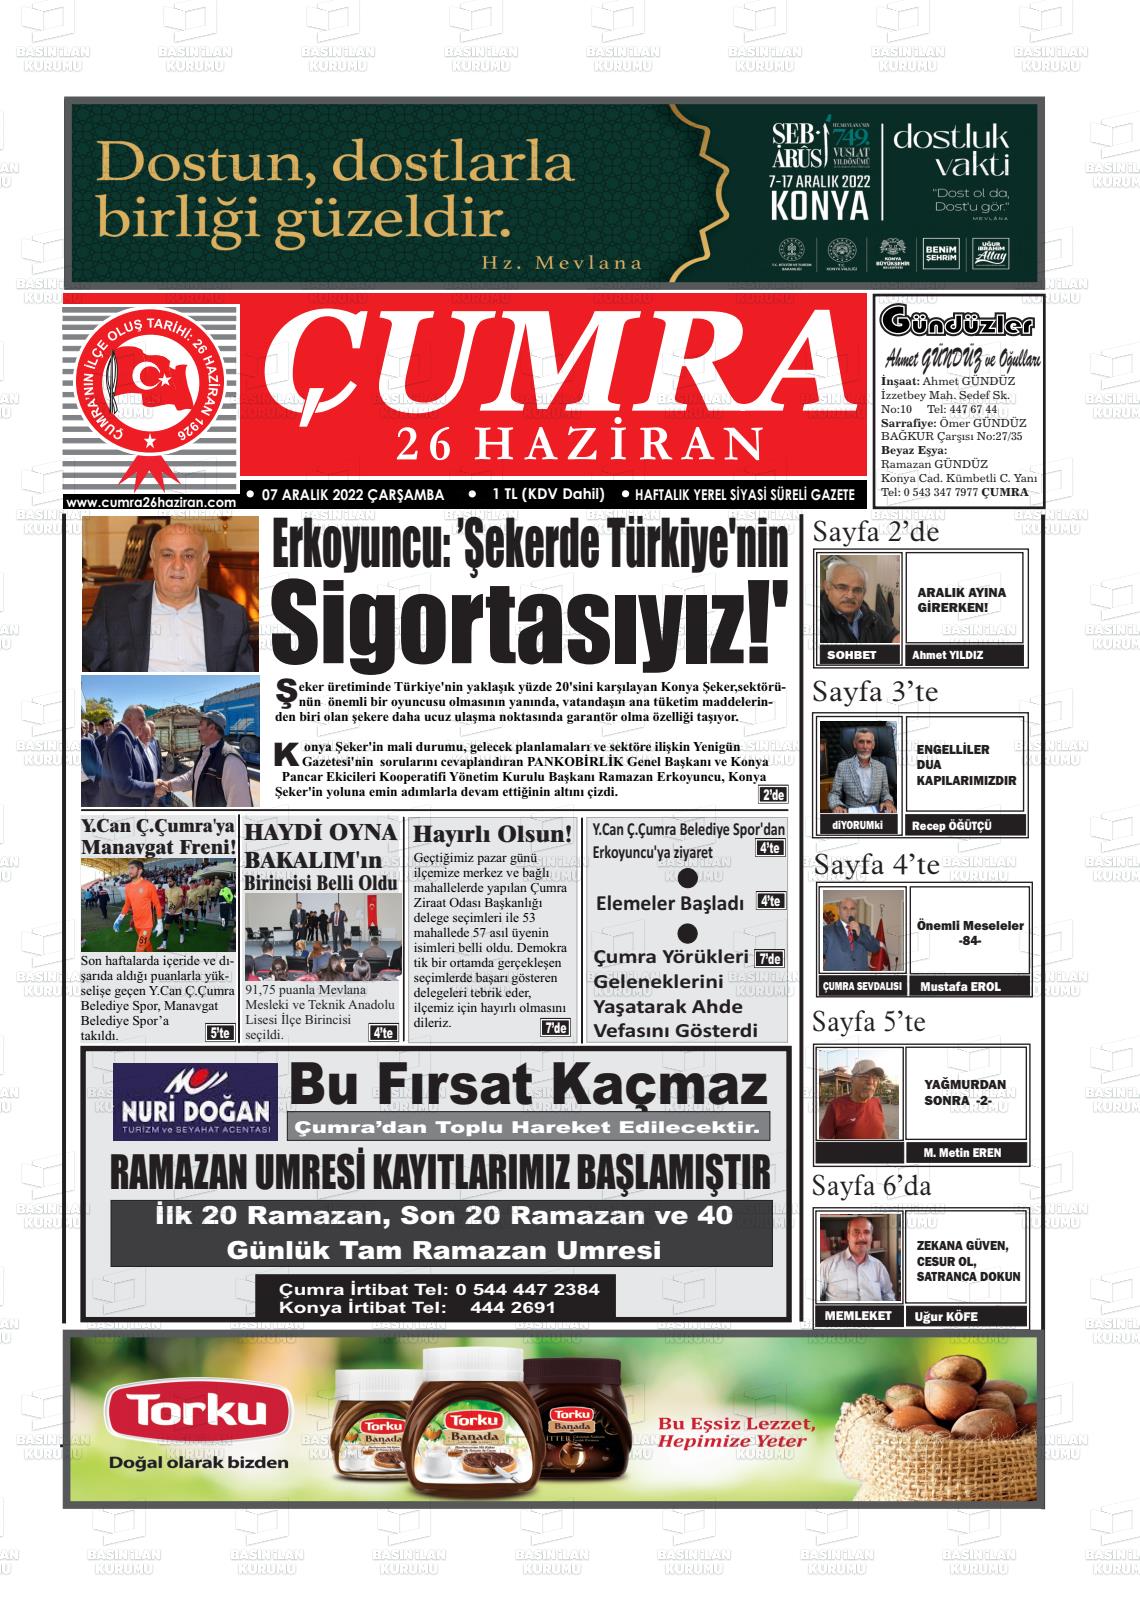 07 Aralık 2022 Çumra 26 Haziran Gazete Manşeti